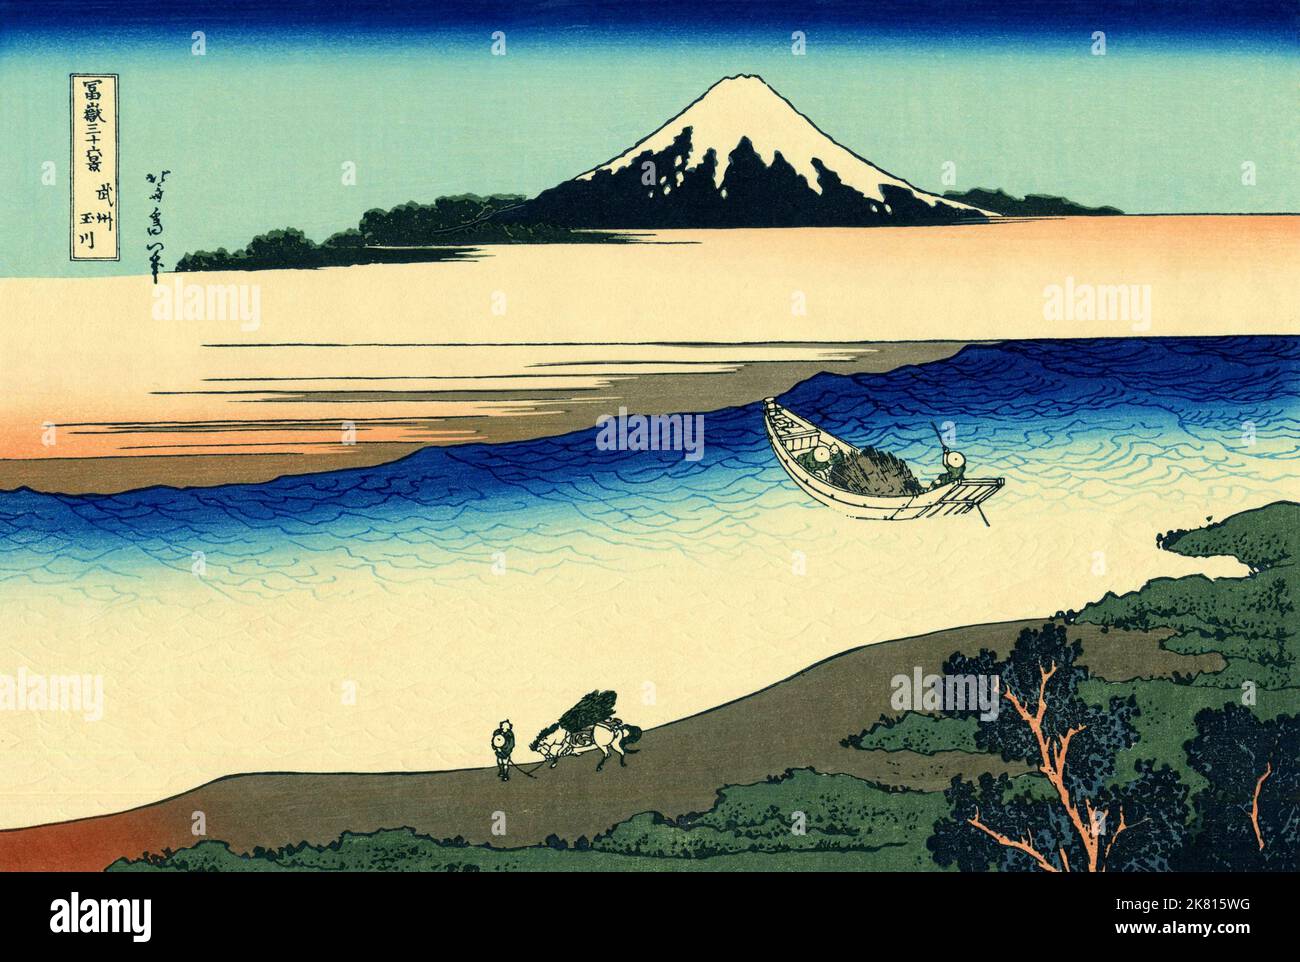 Giappone: «il fiume Tama nella provincia di Musashi». Ukiyo-e stampa in blocco della serie «trentasei viste del Monte Fuji» di Katsushika Hokusai (31 ottobre 1760 - 10 maggio 1849), c.. 1830. «36 viste del Monte Fuji» è una serie di grandi stampe a blocchi di legno realizzate dall’artista Katsushika Hokusai. La serie raffigura il Monte Fuji in stagioni e condizioni meteorologiche diverse da una varietà di luoghi e distanze. Si compone di 46 stampe create tra il 1826 e il 1833. I primi 36 sono stati inclusi nella pubblicazione originale e, per la loro popolarità, altri 10 sono stati aggiunti in seguito. Foto Stock